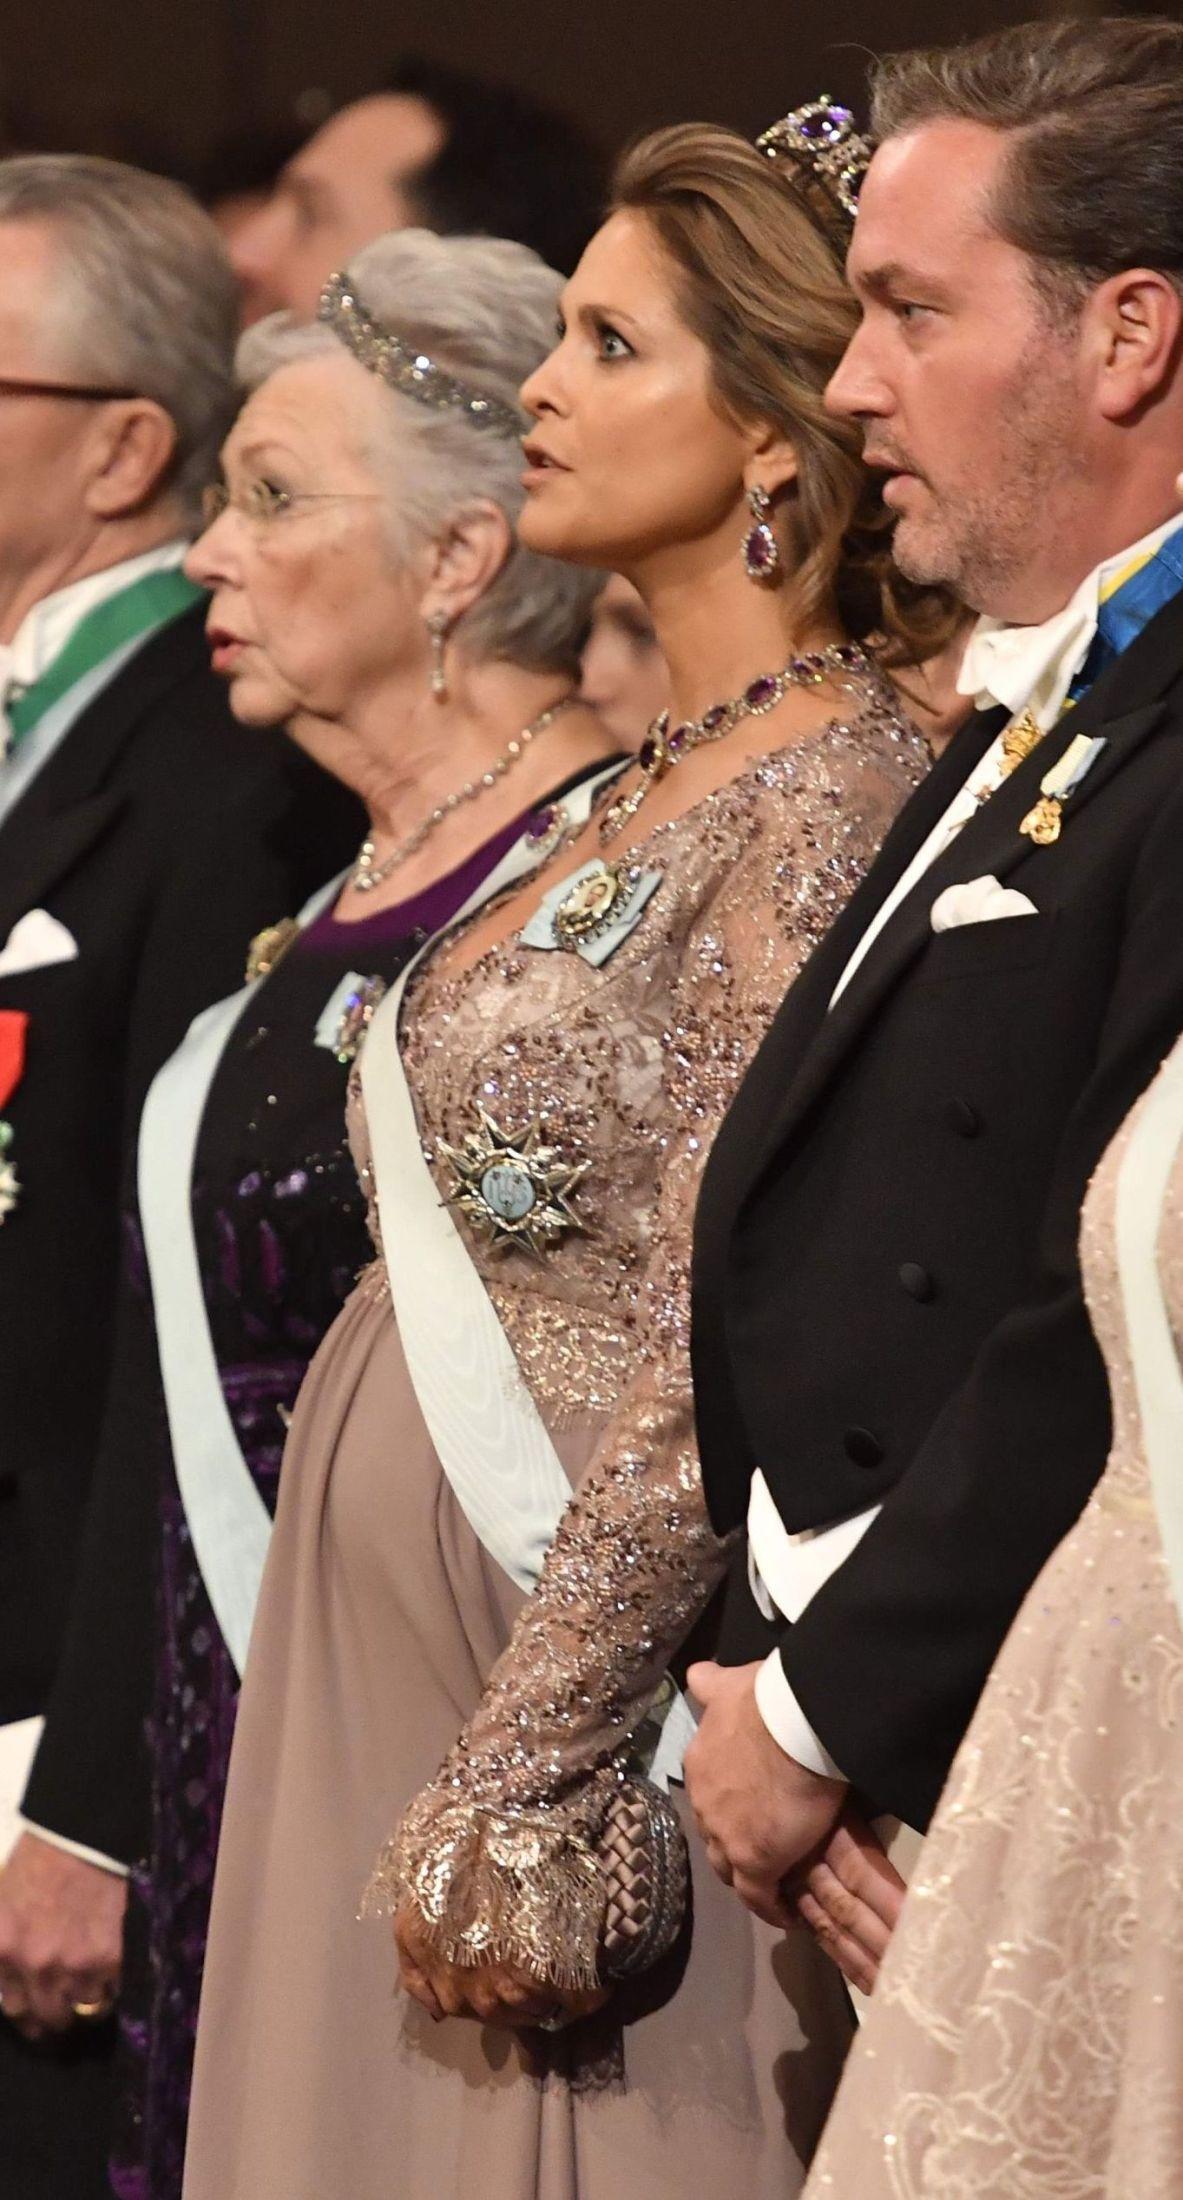 FREMHEVET MAGEN: Prinsesse Madeleine hadde en pudderfarget, rosa kjole med blondeoverdel. Kjolen med høyt liv fremhevet babymagen. Foto: AFP